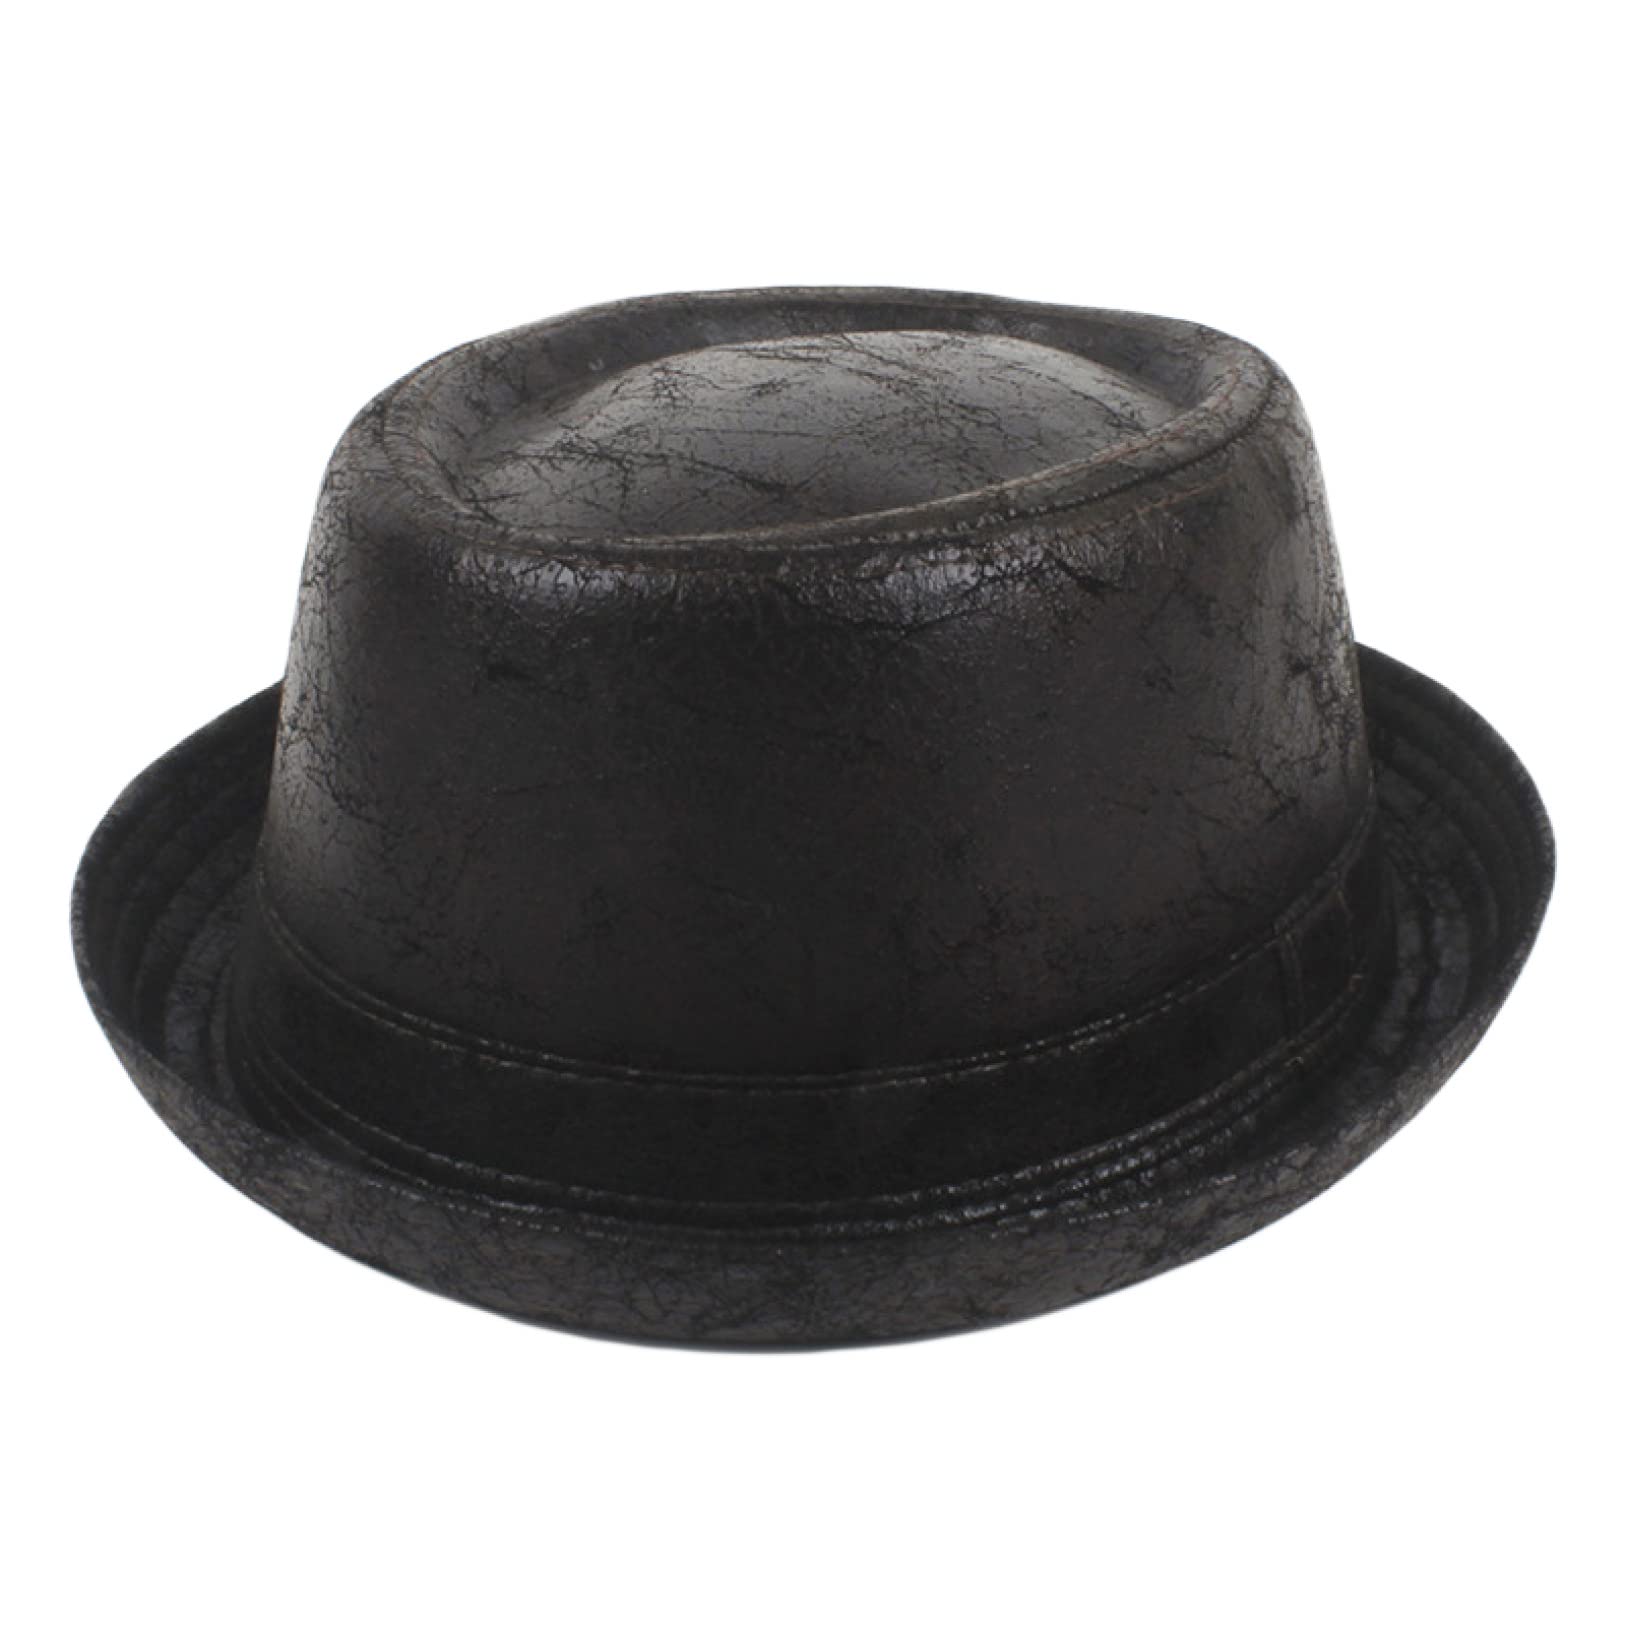 送料無料Vintage Fedora Hat for Men Leather Pork Pie Boater Flat Top Hats for Gentleman Bowler Big Size Coffee並行輸入